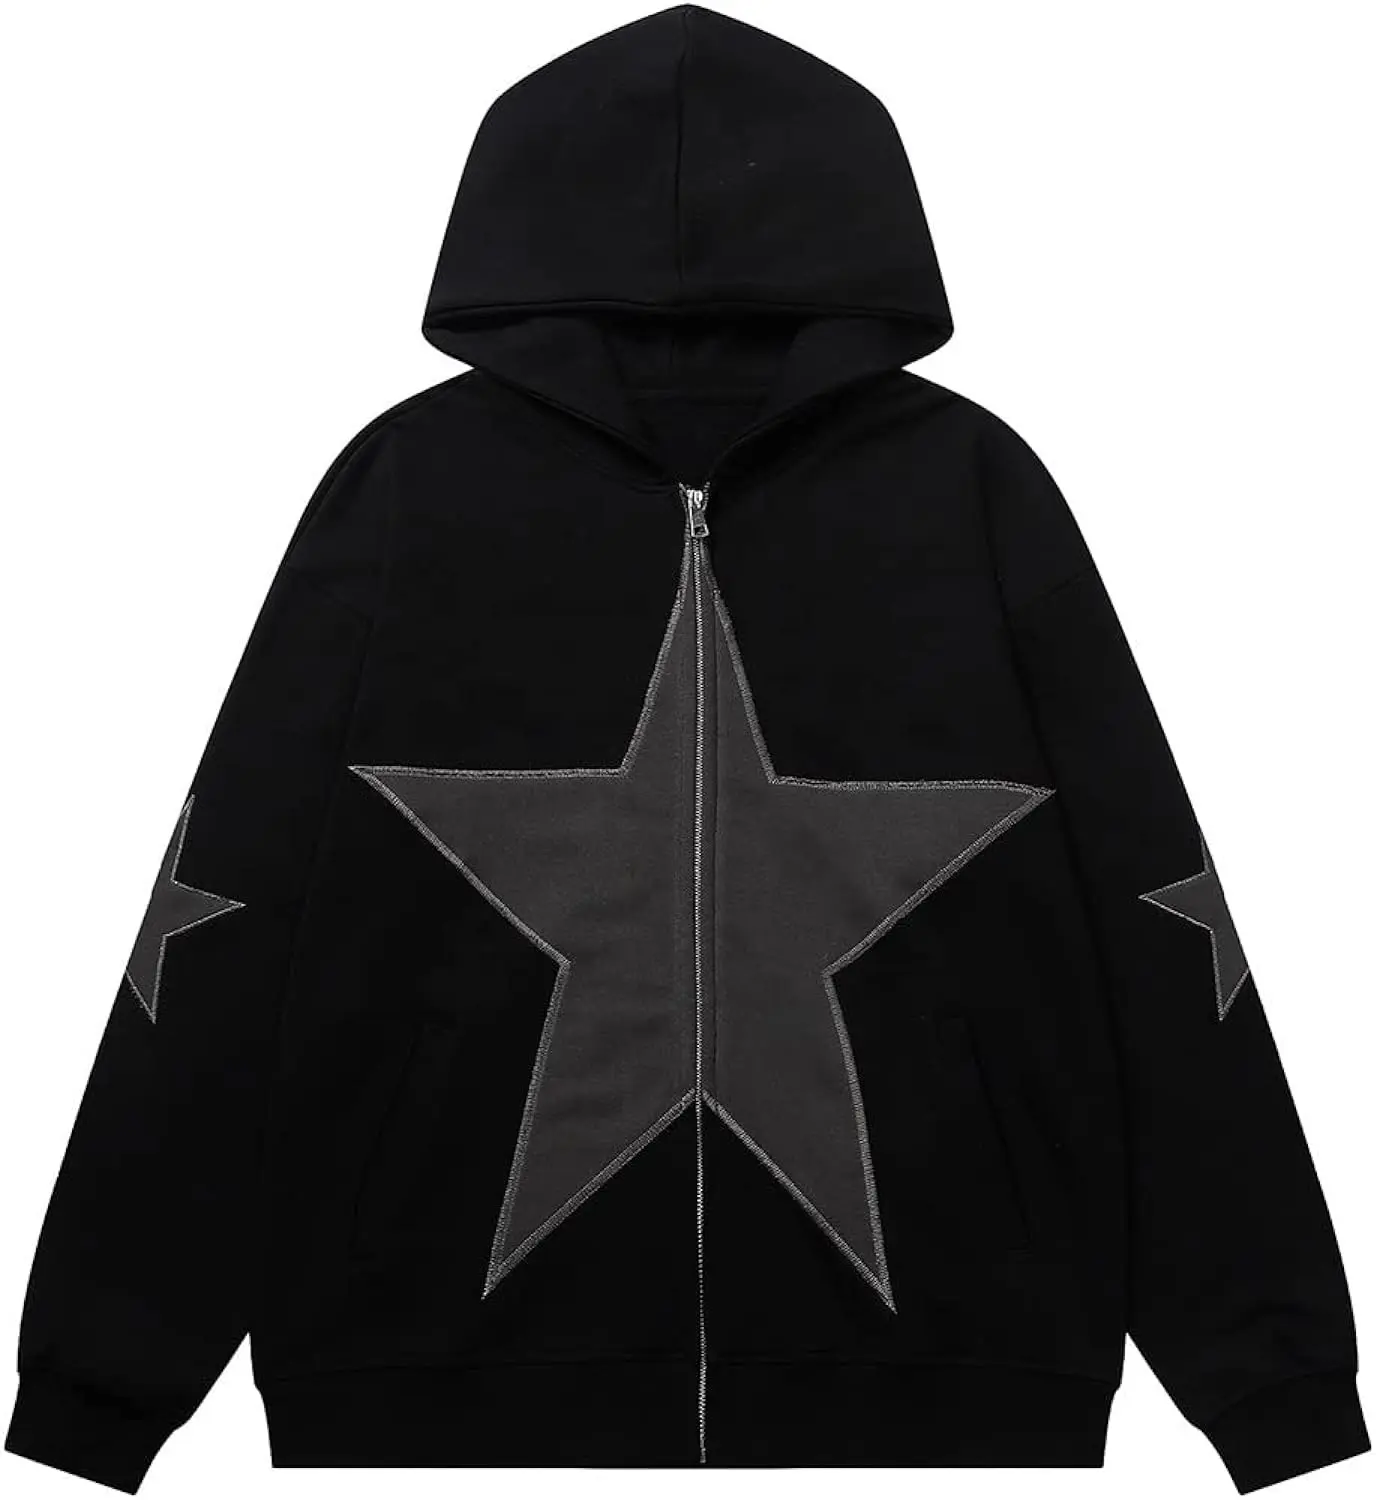 Hoodie hitam dengan bintang di depan desain baru modis bintang hoodie bertudung sulaman sweter hoodie tambalan bintang